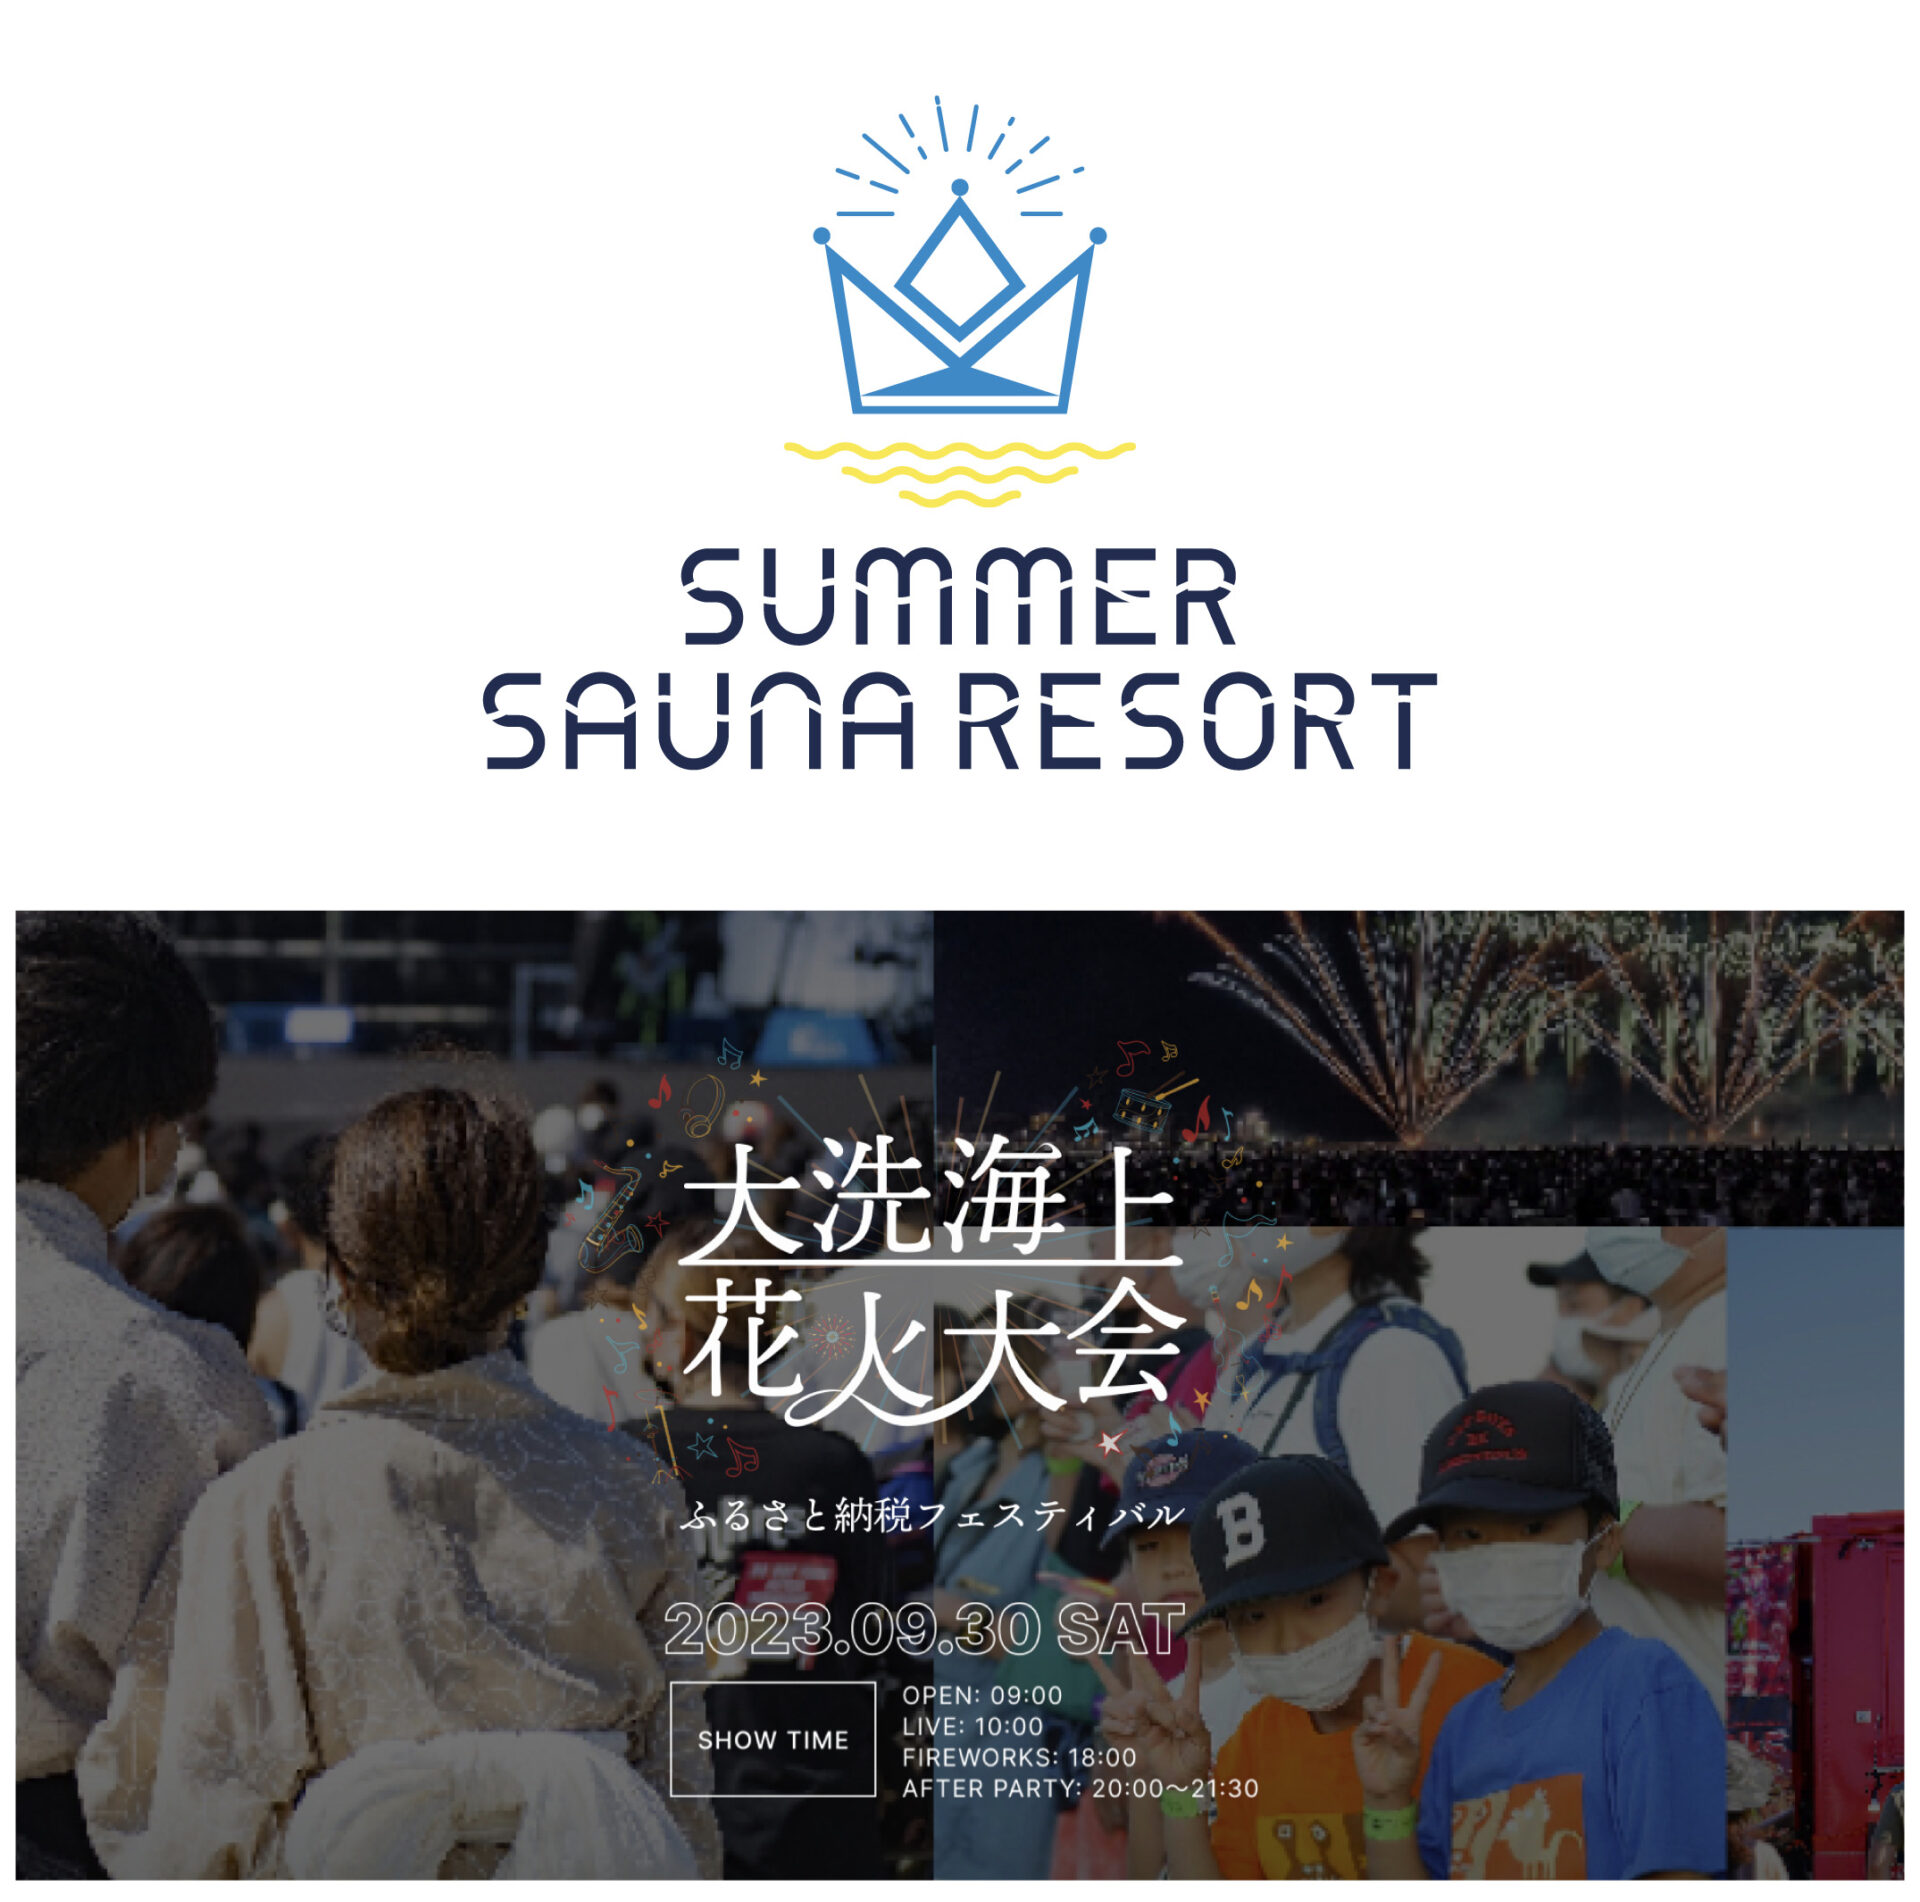 SUMMER SAUNA RESORT in 大洗海上花火大会 / イベント情報